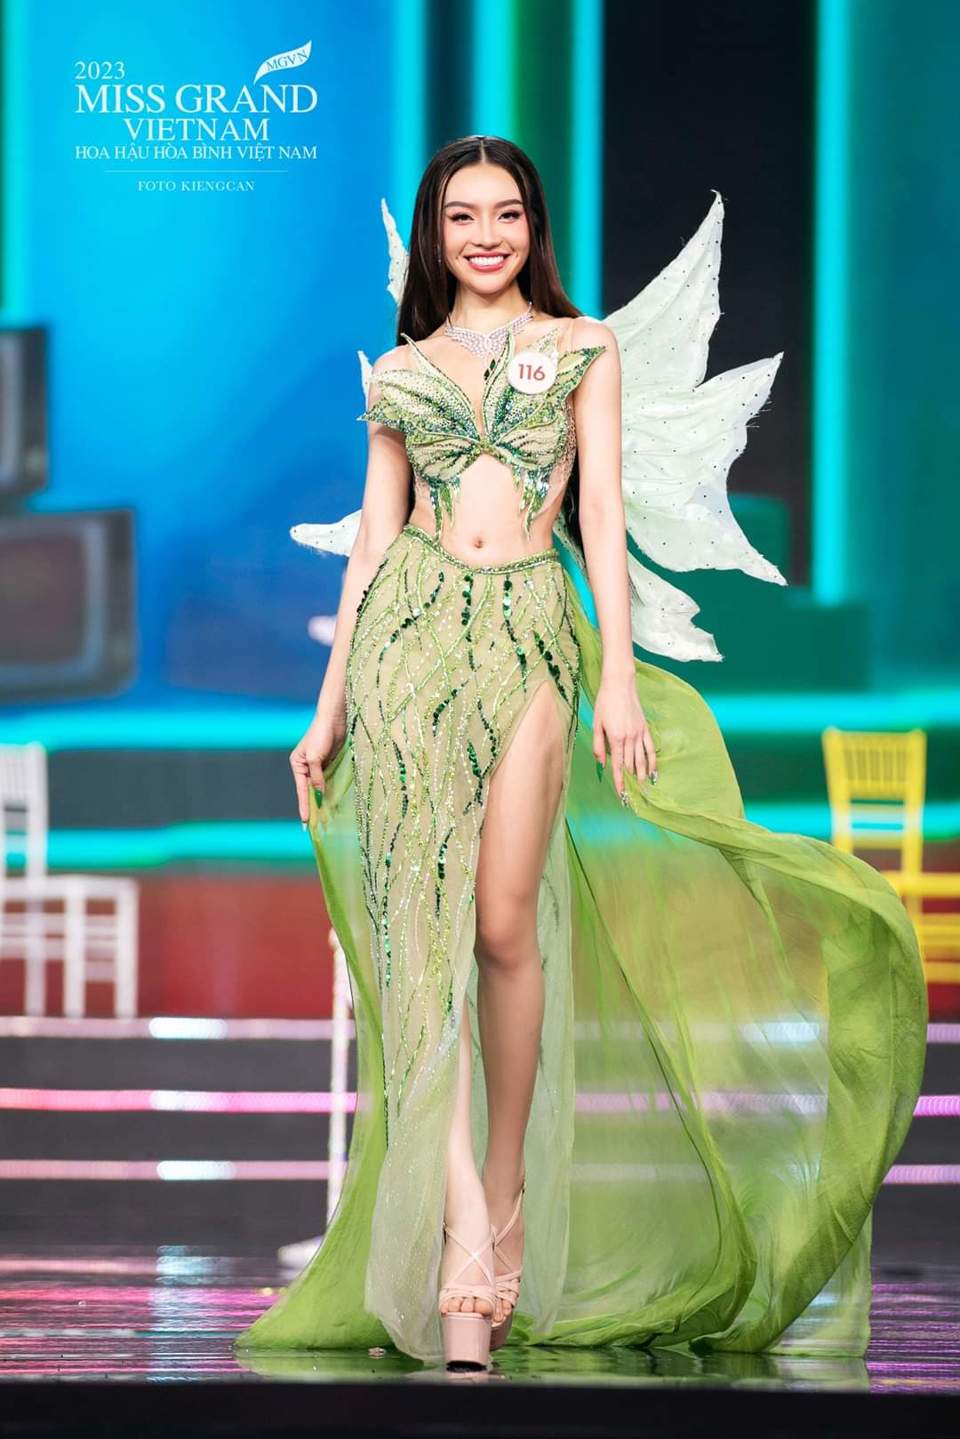 Trực tiếp: Bán kết Hoa hậu Hòa bình Việt Nam - Miss Grand Vietnam 2023 - Ảnh 7